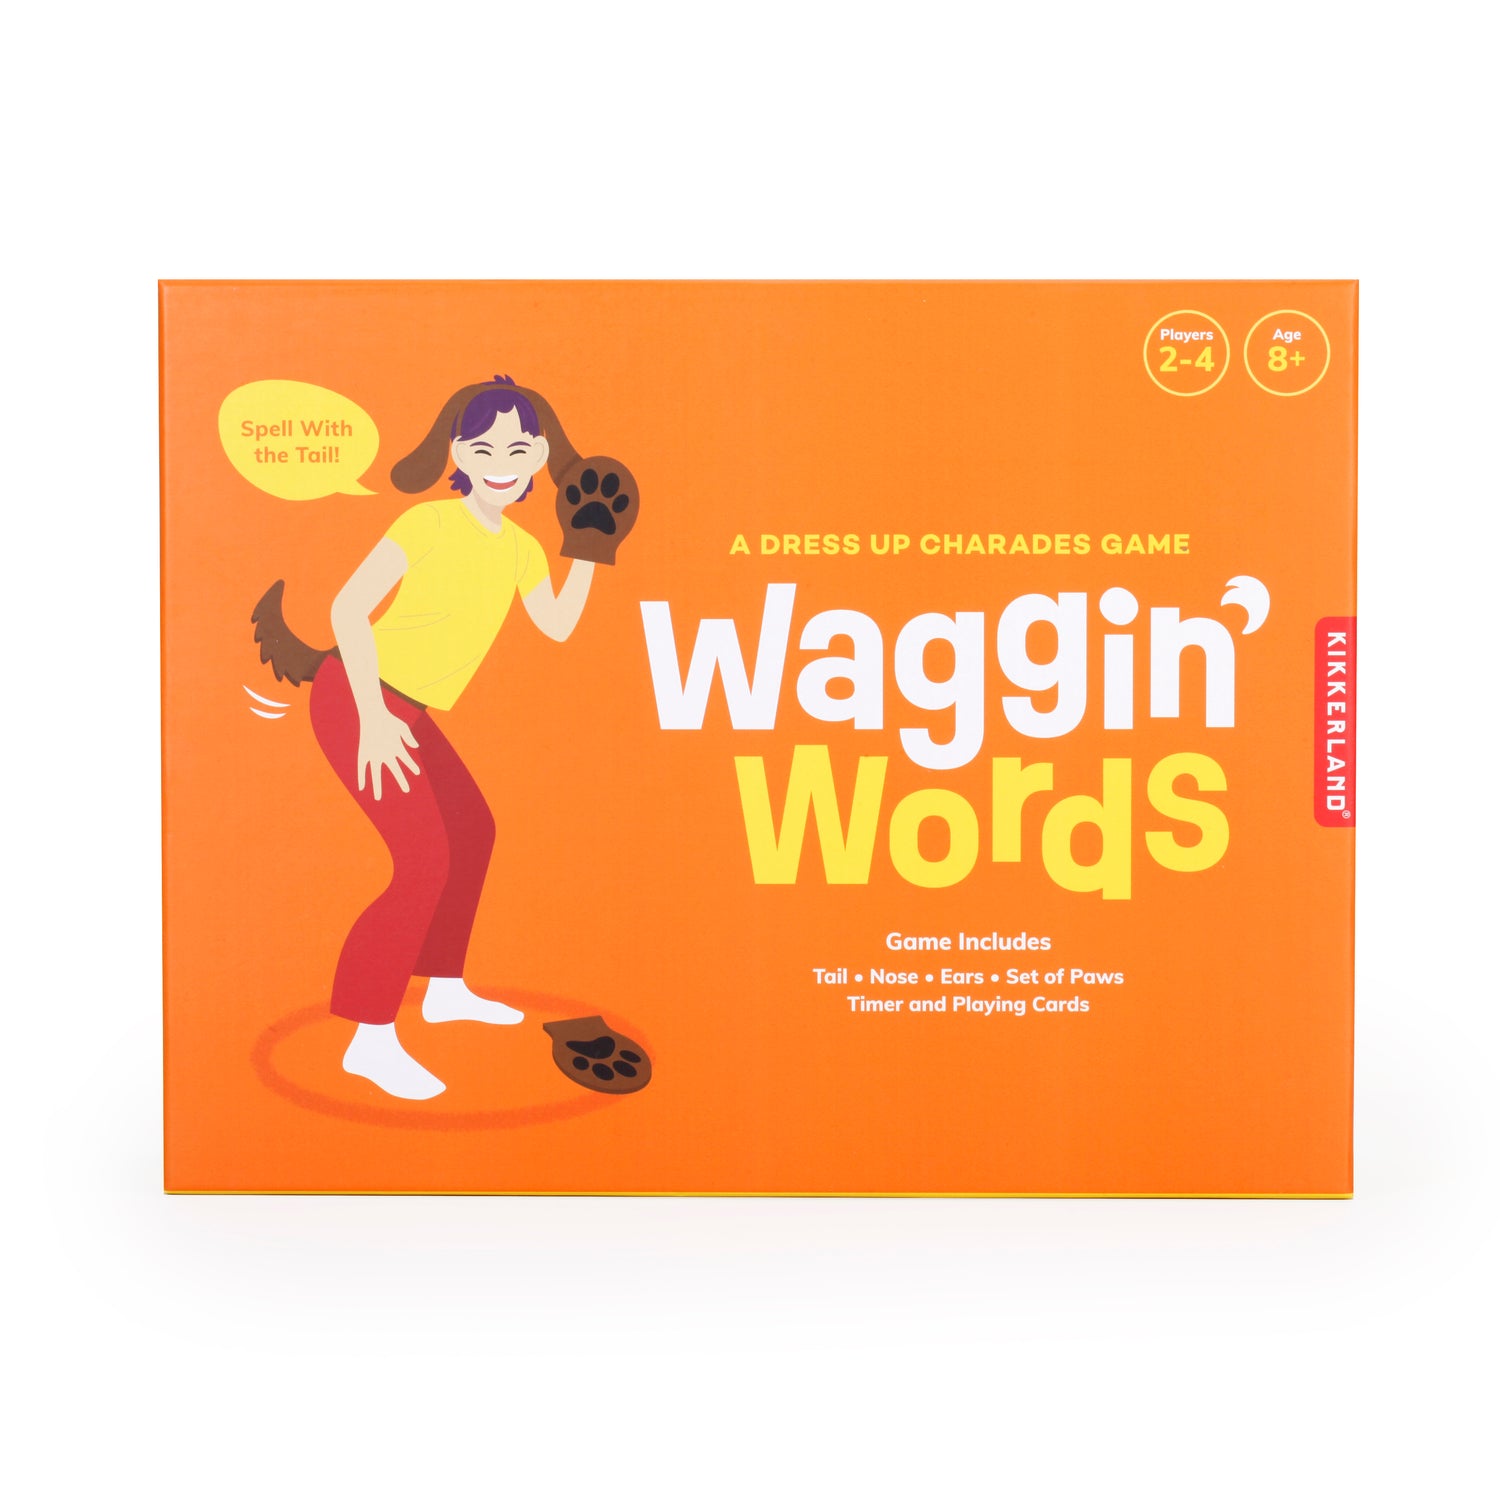 Waggin’ Words